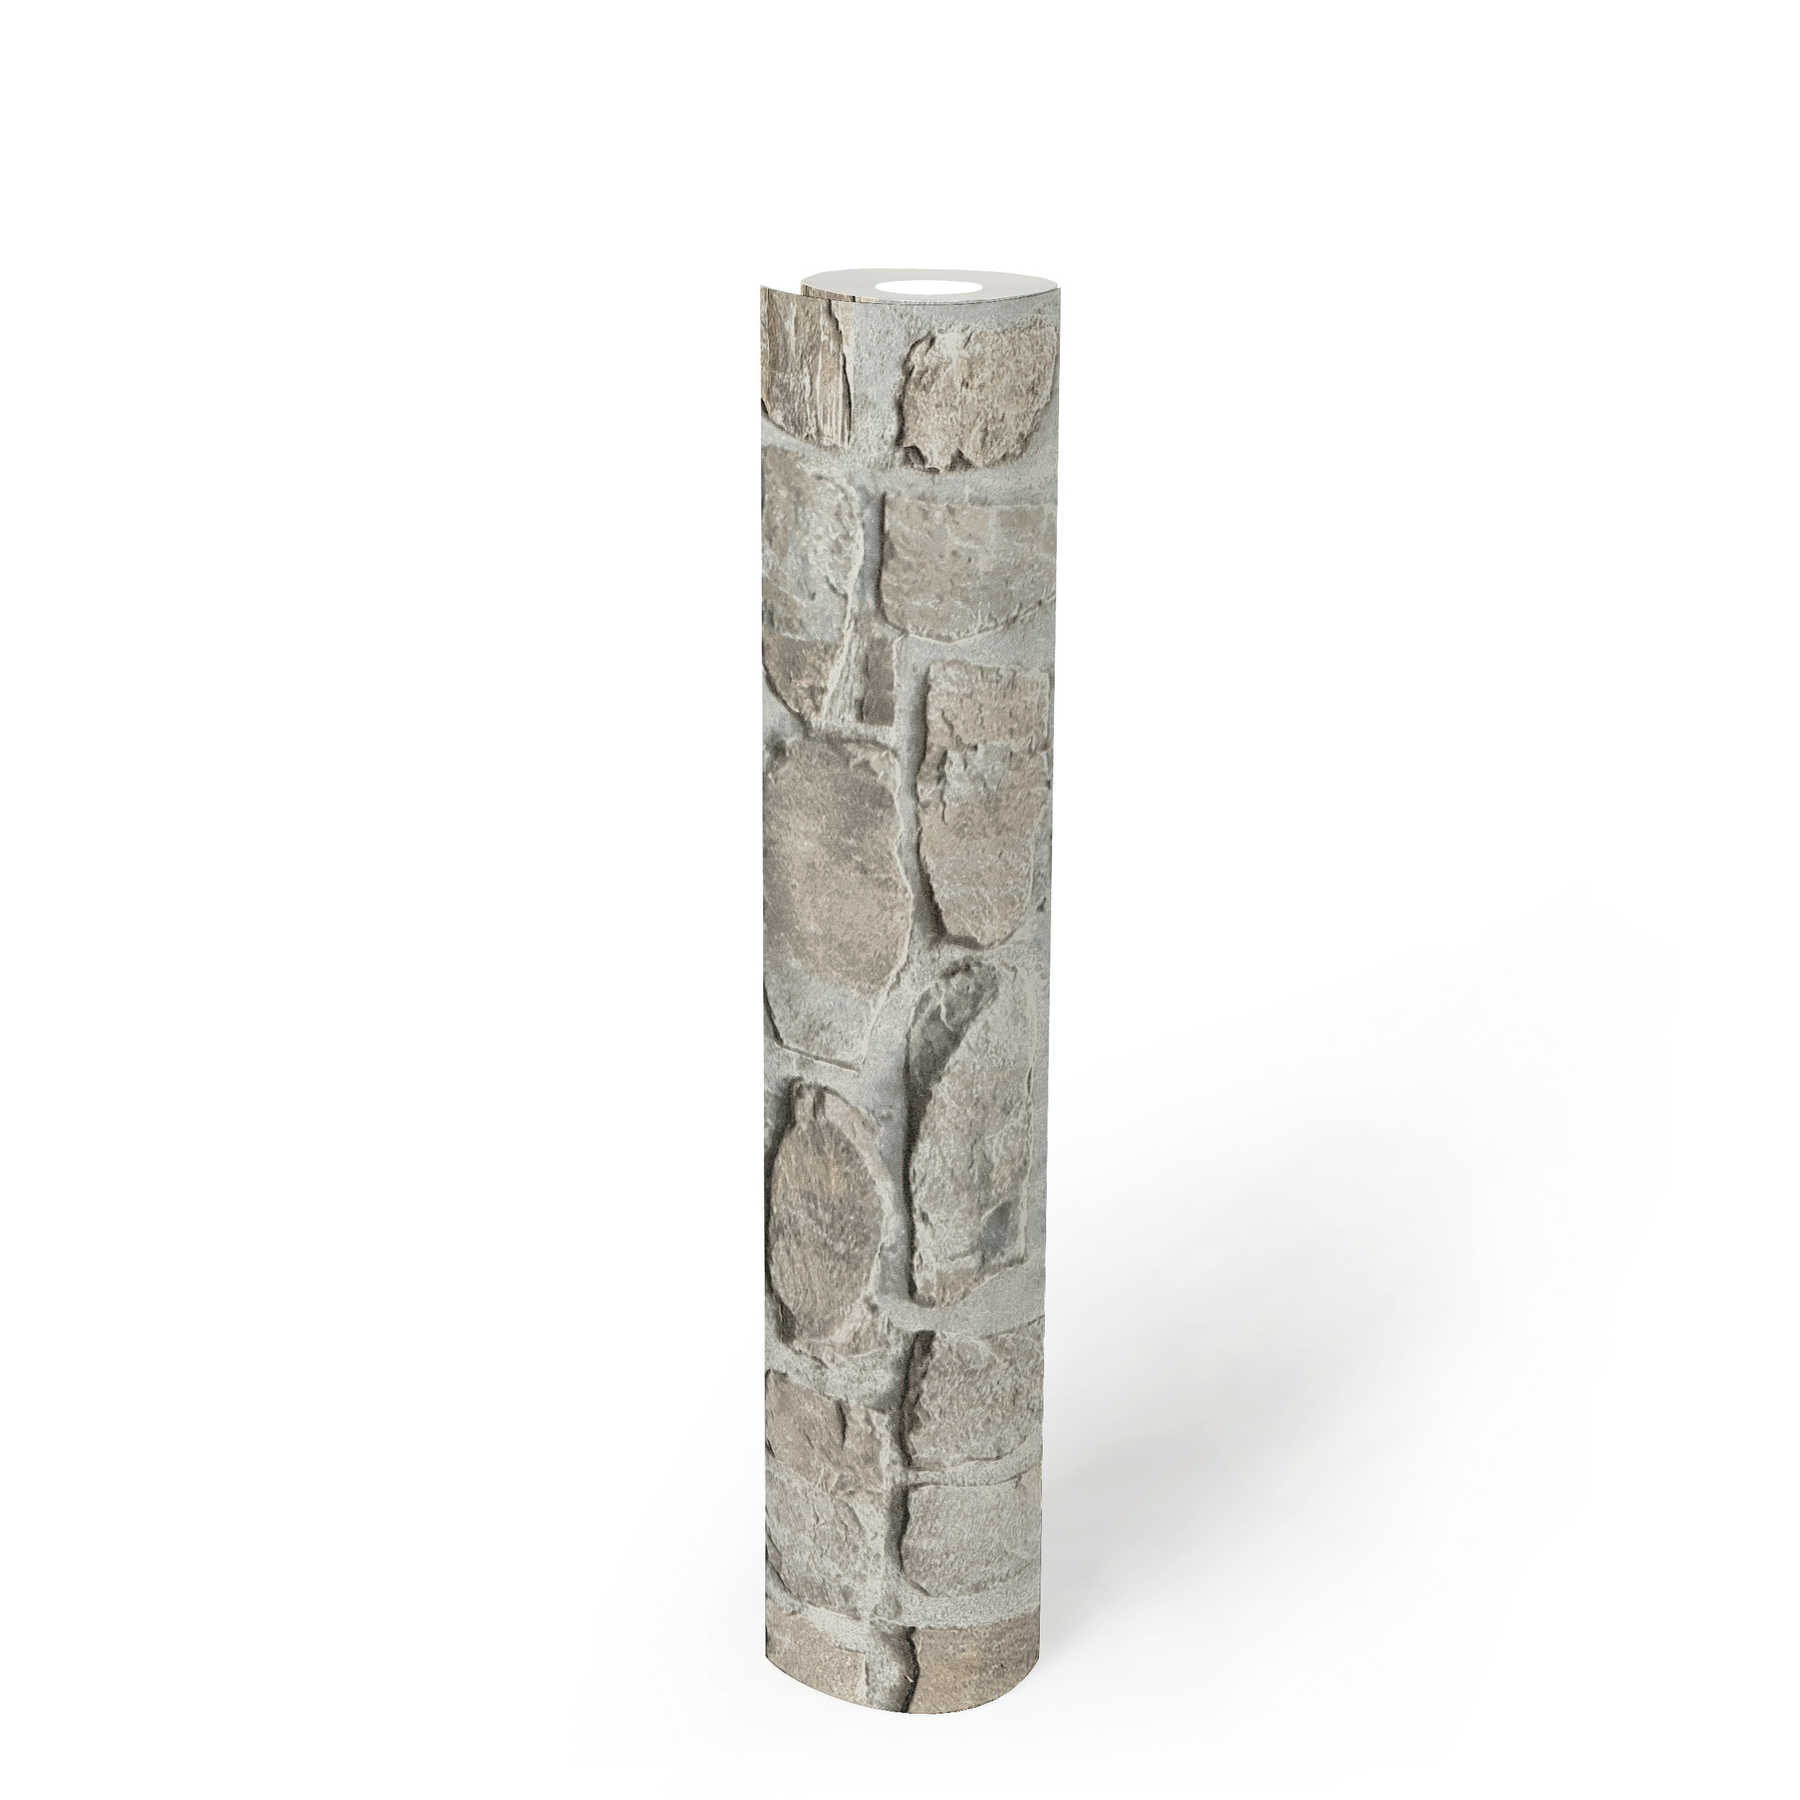             Carta da parati in pietra con muratura in pietra naturale - Grigio, Beige
        